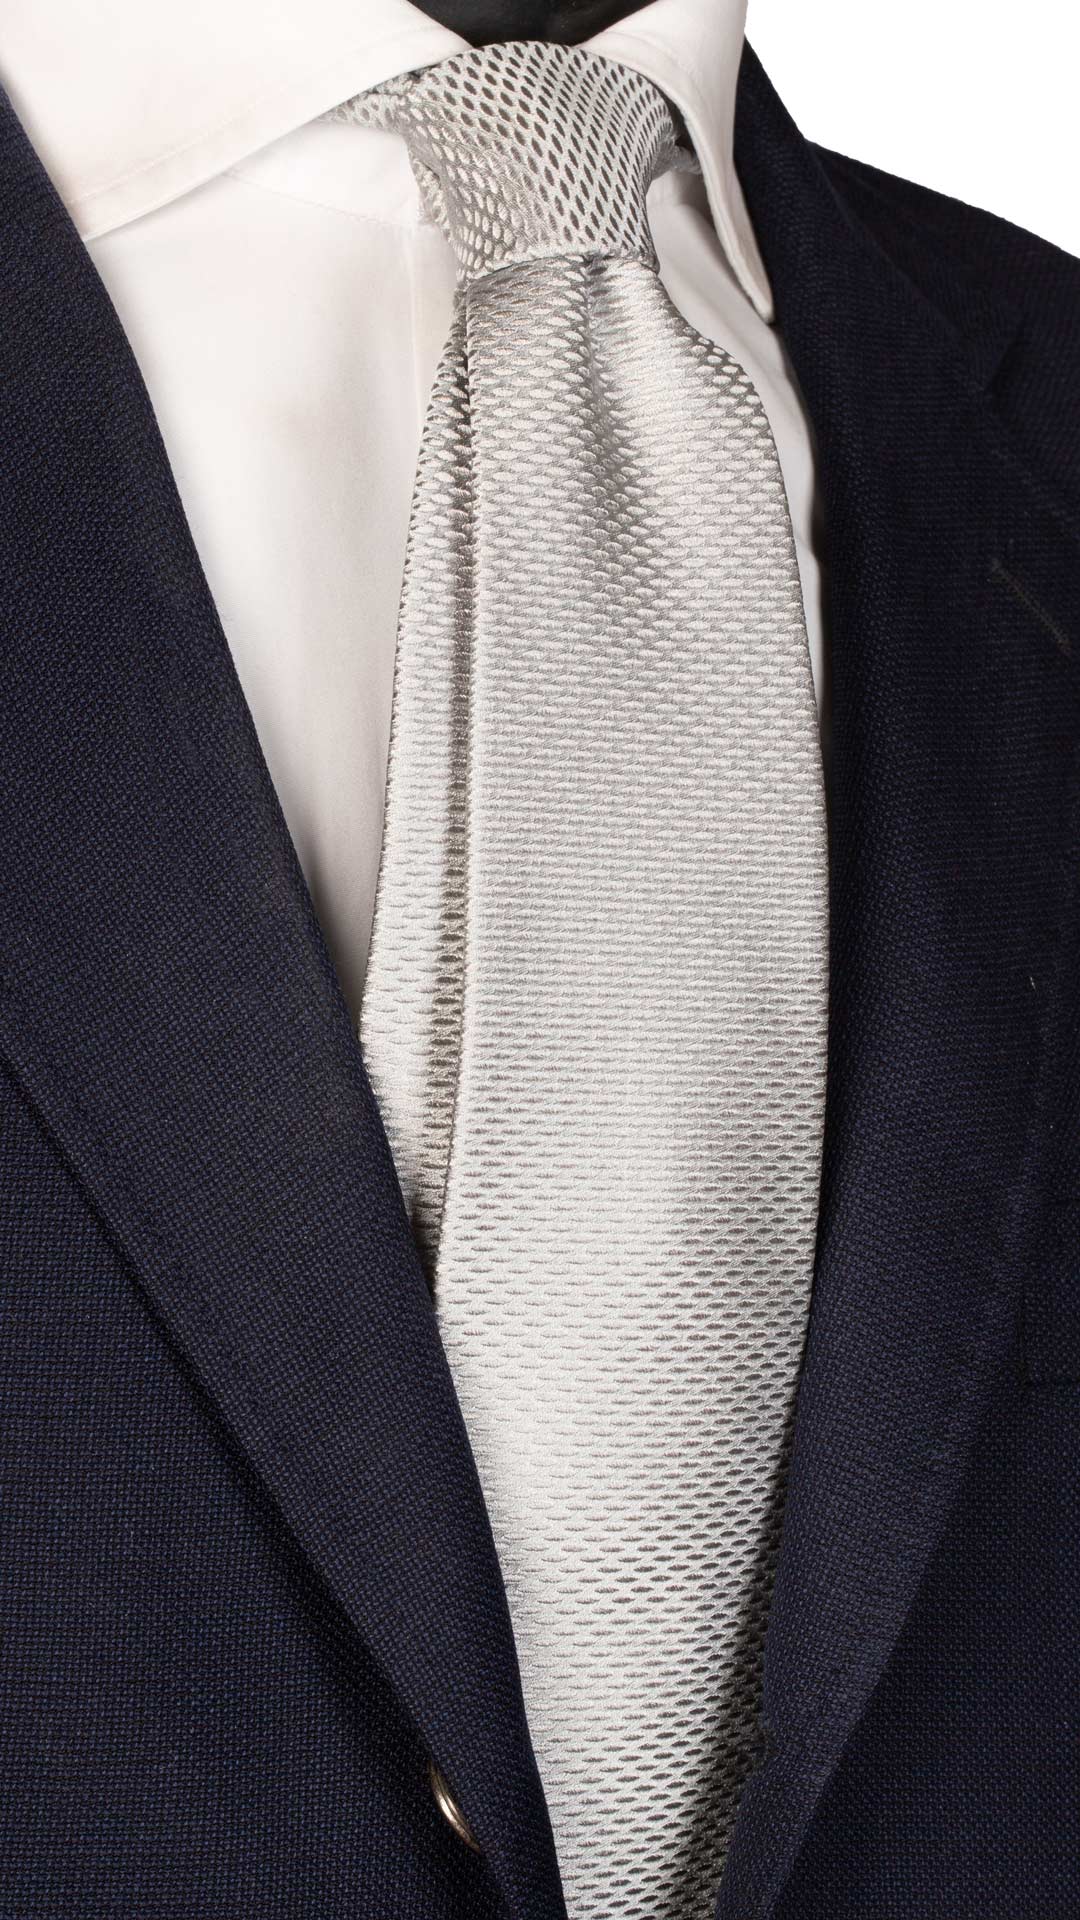 Cravatta da Cerimonia di Seta Grigio Argento Fantasia Grigia Made in Italy Graffeo Cravatte